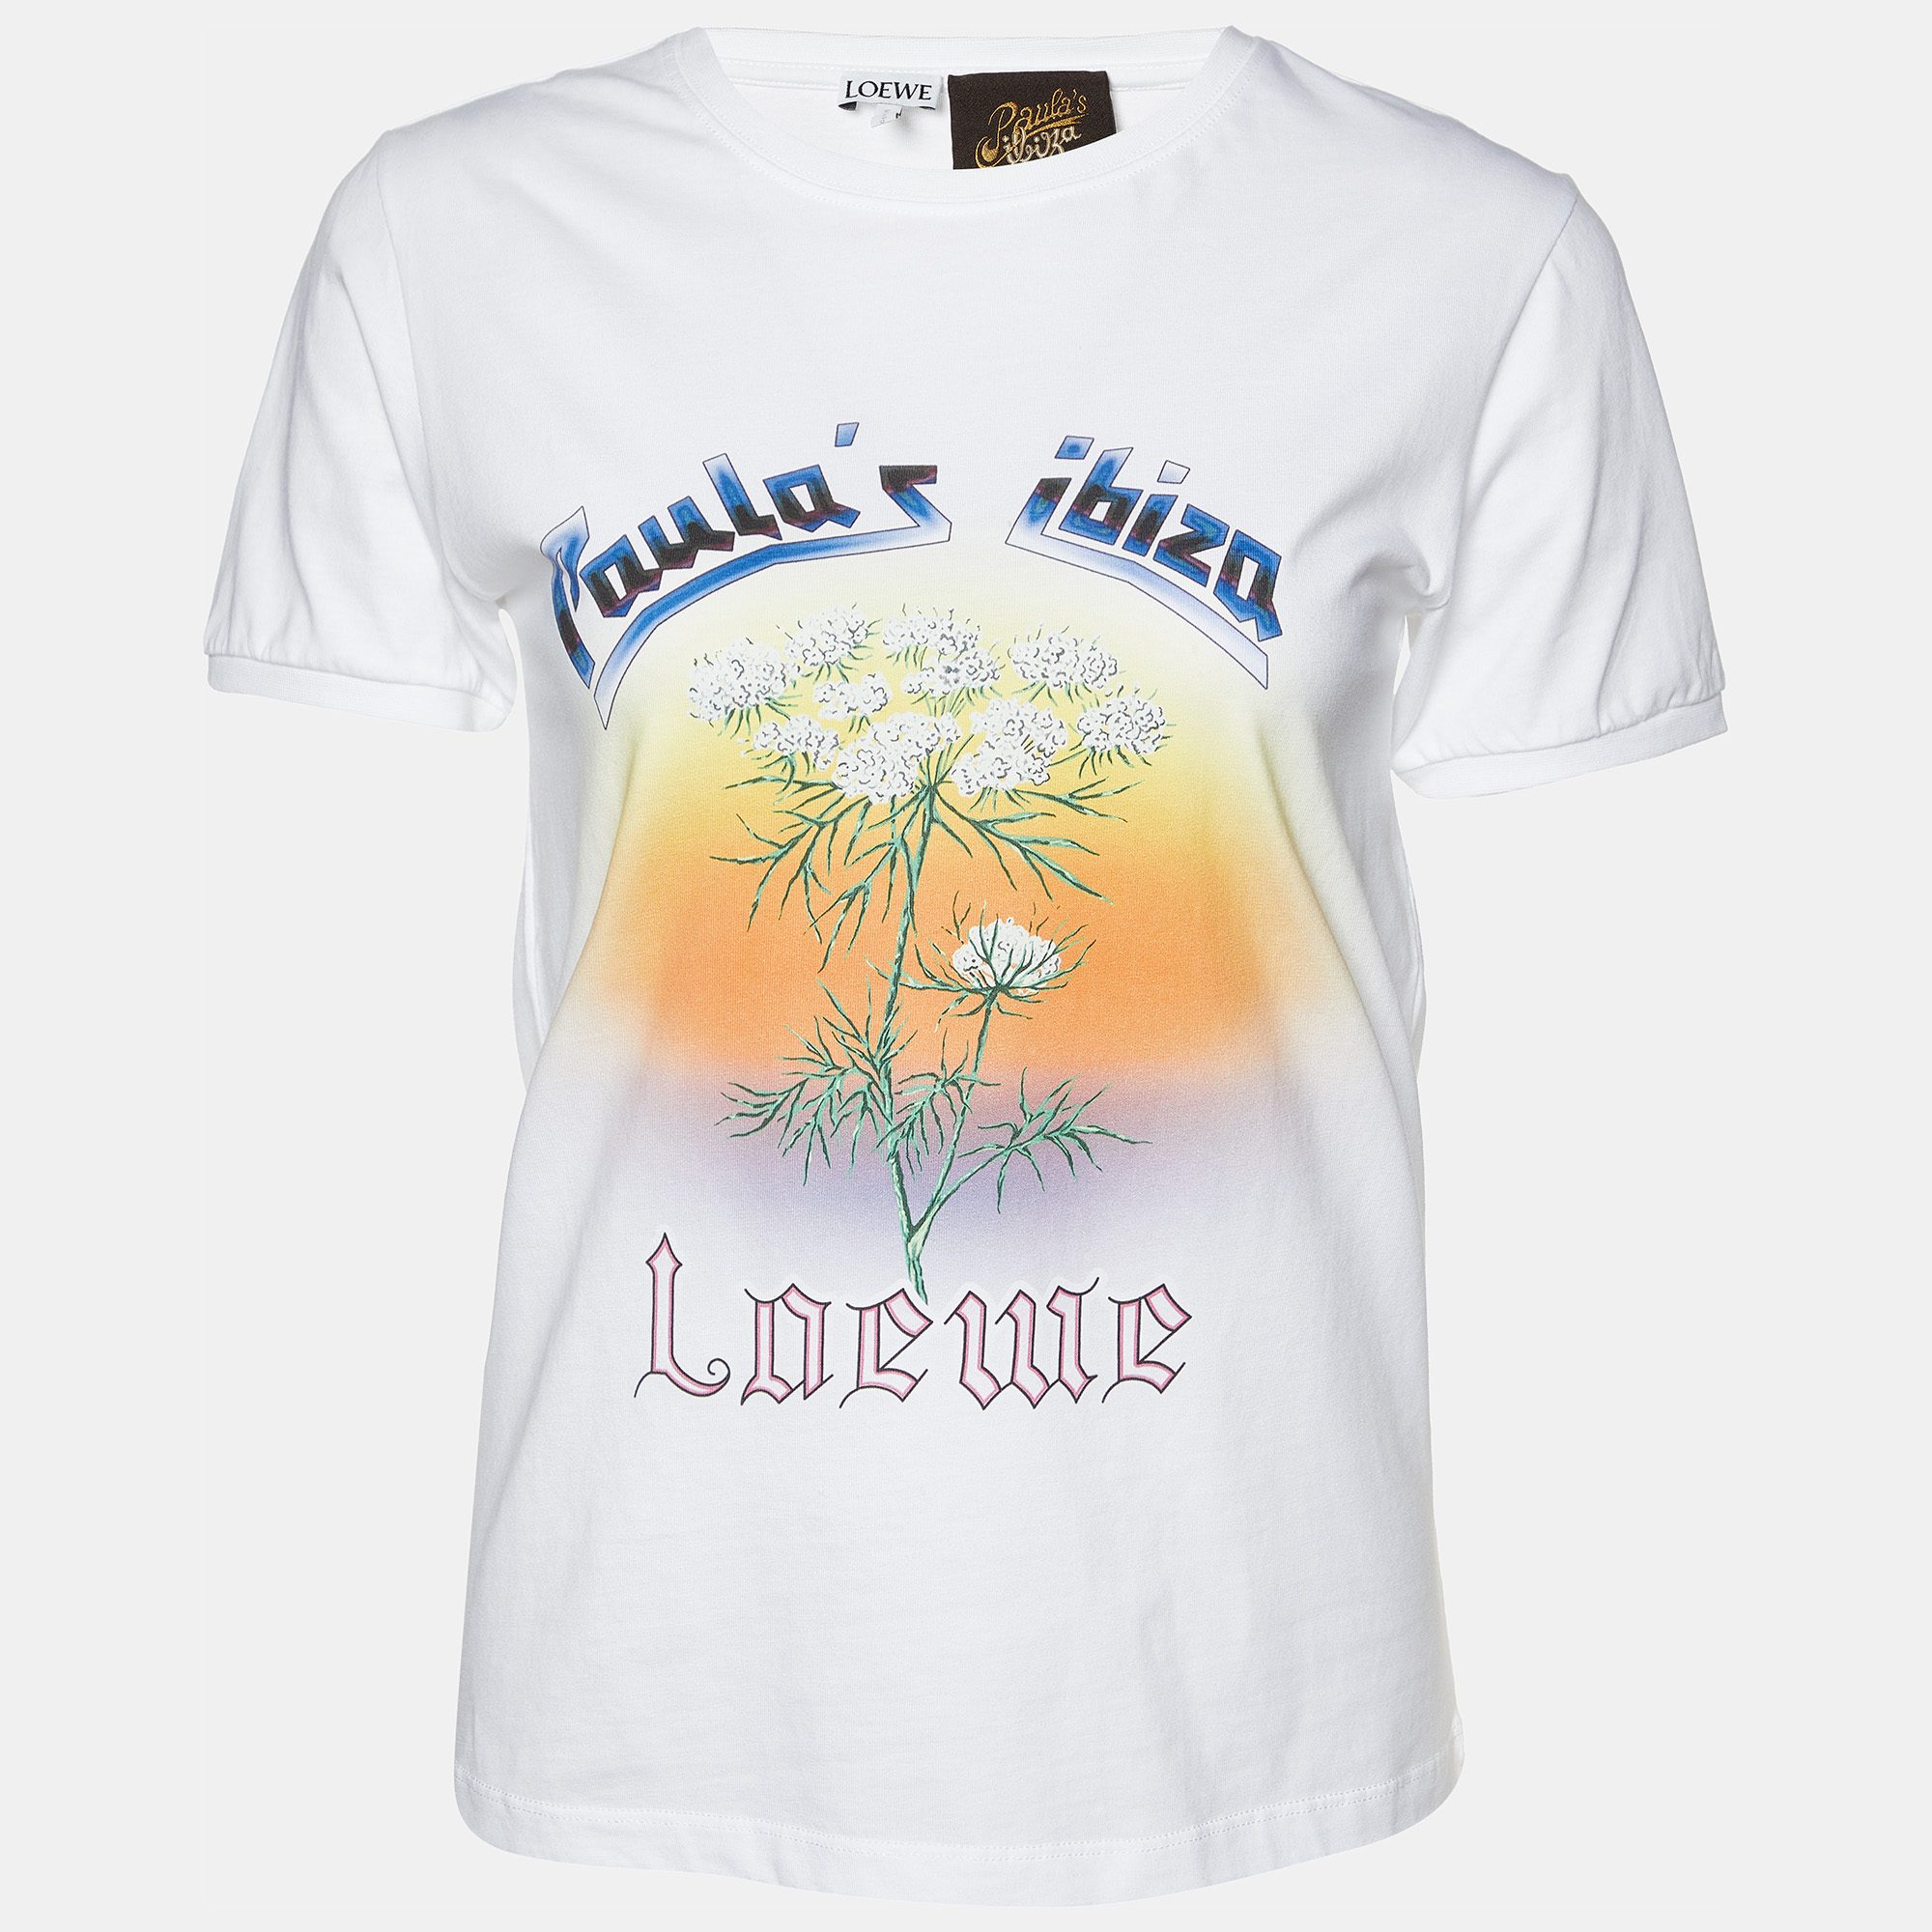 

Loewe X Paula's Ibiza White Printed Cotton Crew Neck T-Shirt S